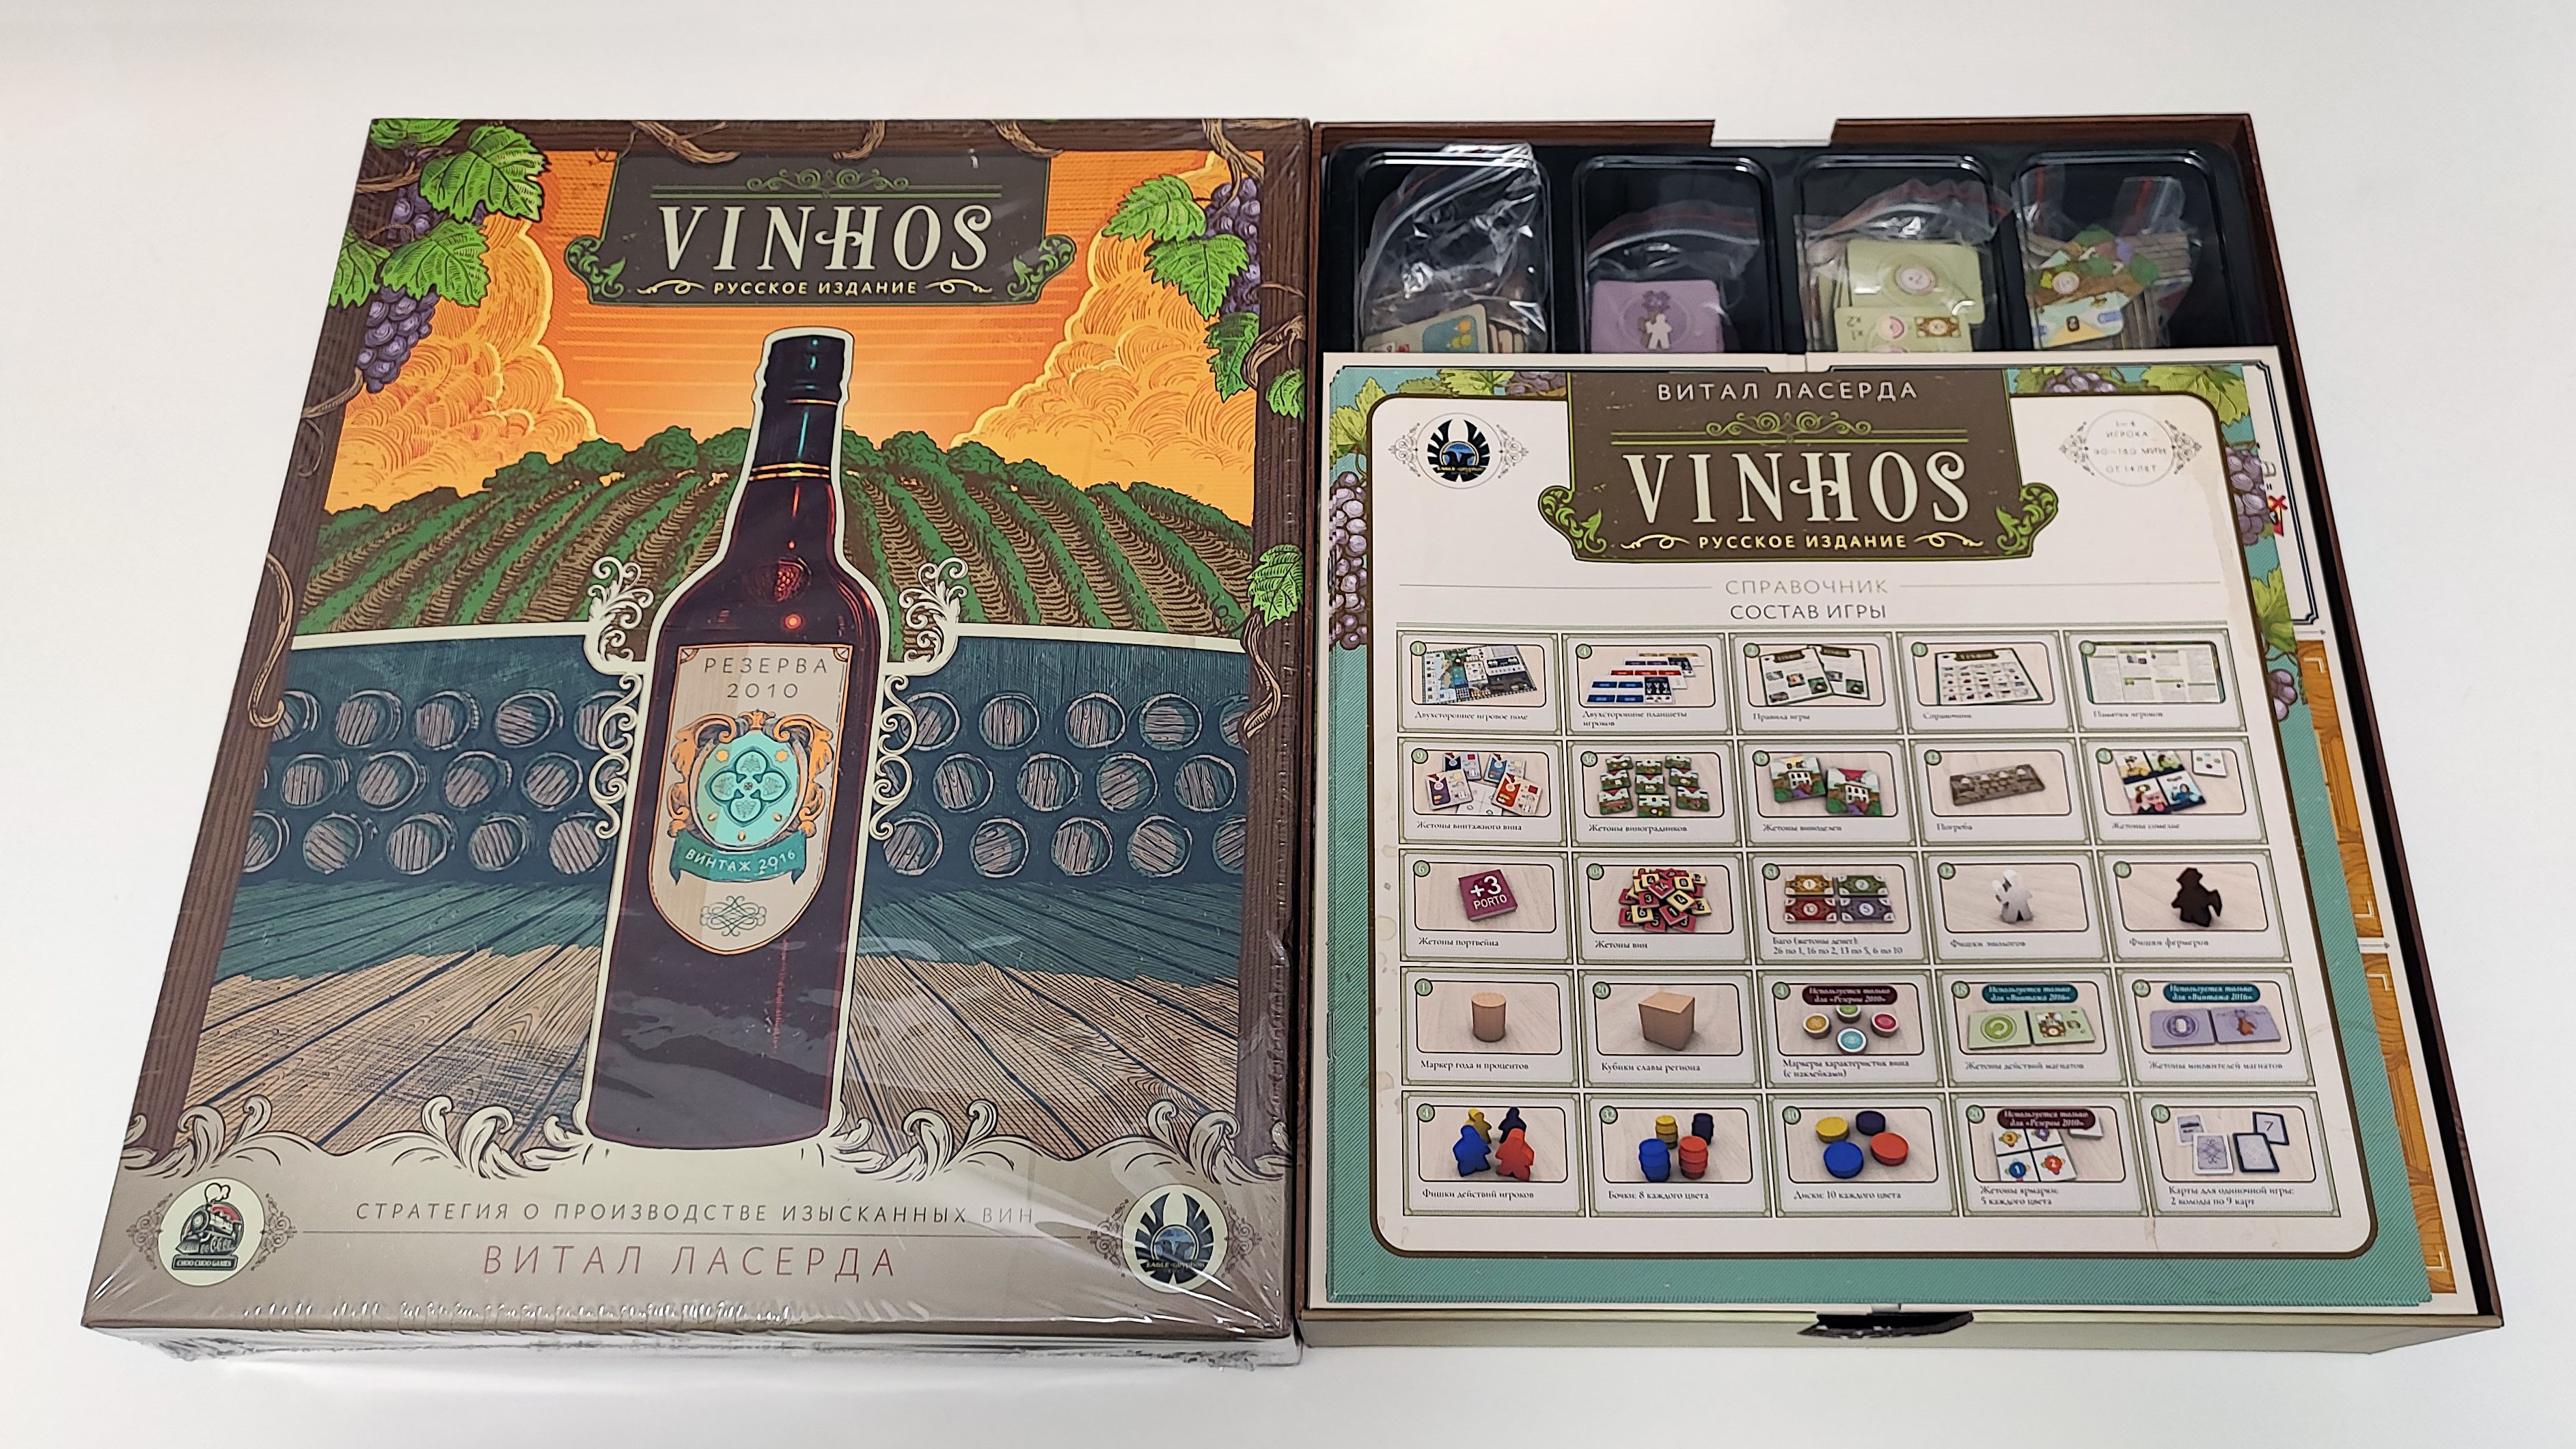 Распаковка игры "Vinhos. Русское издание"